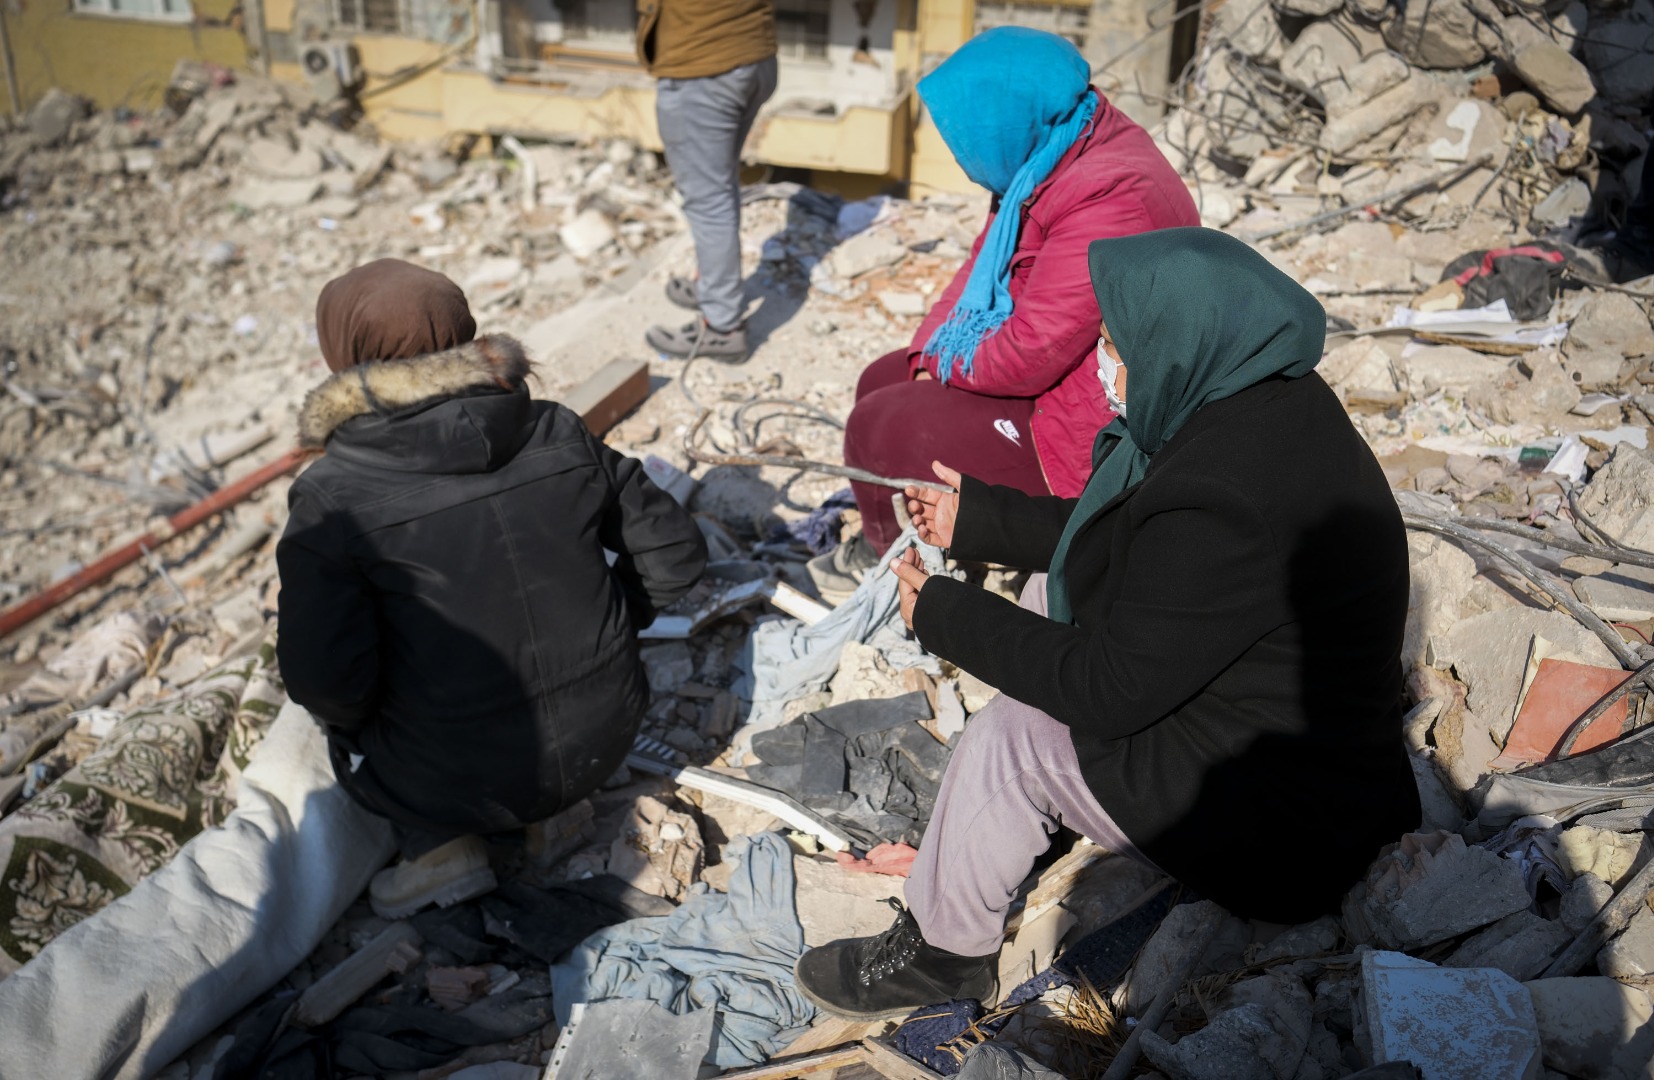 Depremzede vatandaş: Çocuklara sakinleşsinler diye ilaç veriyoruz 24